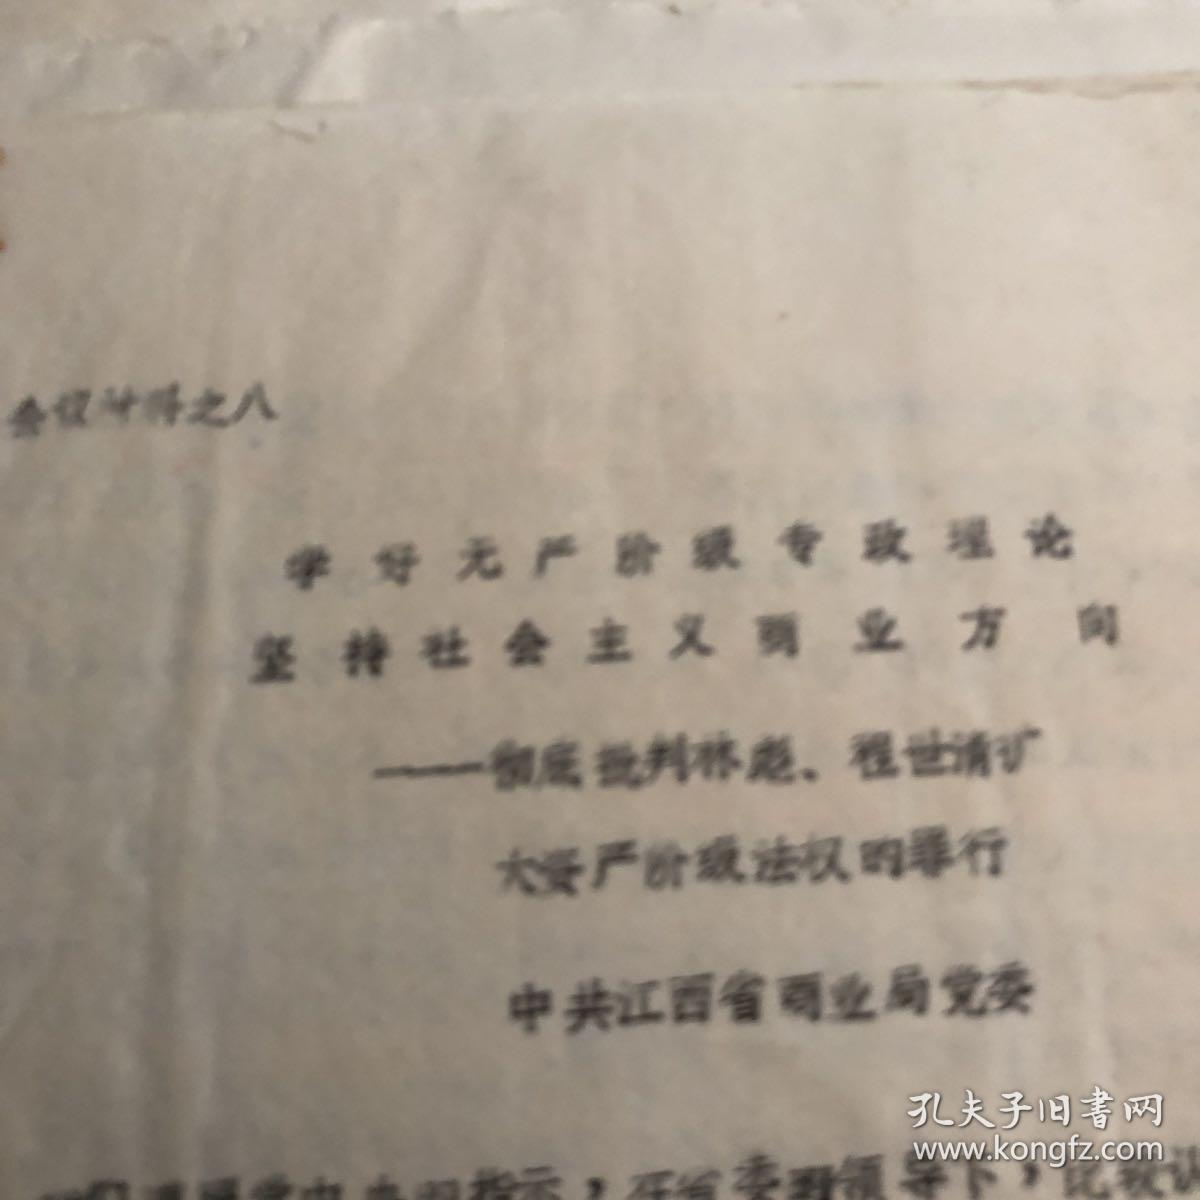 彻底批判林彪 陈世清 扩大资产阶级法权的罪行 江西省商业局党委印1975年